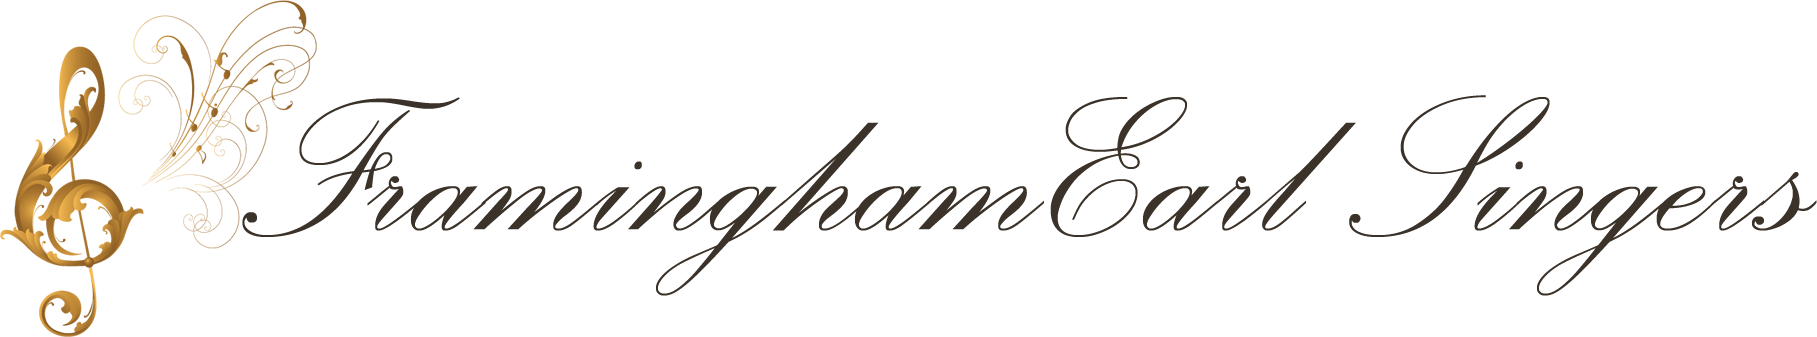 Framingham Earl Singers Logo